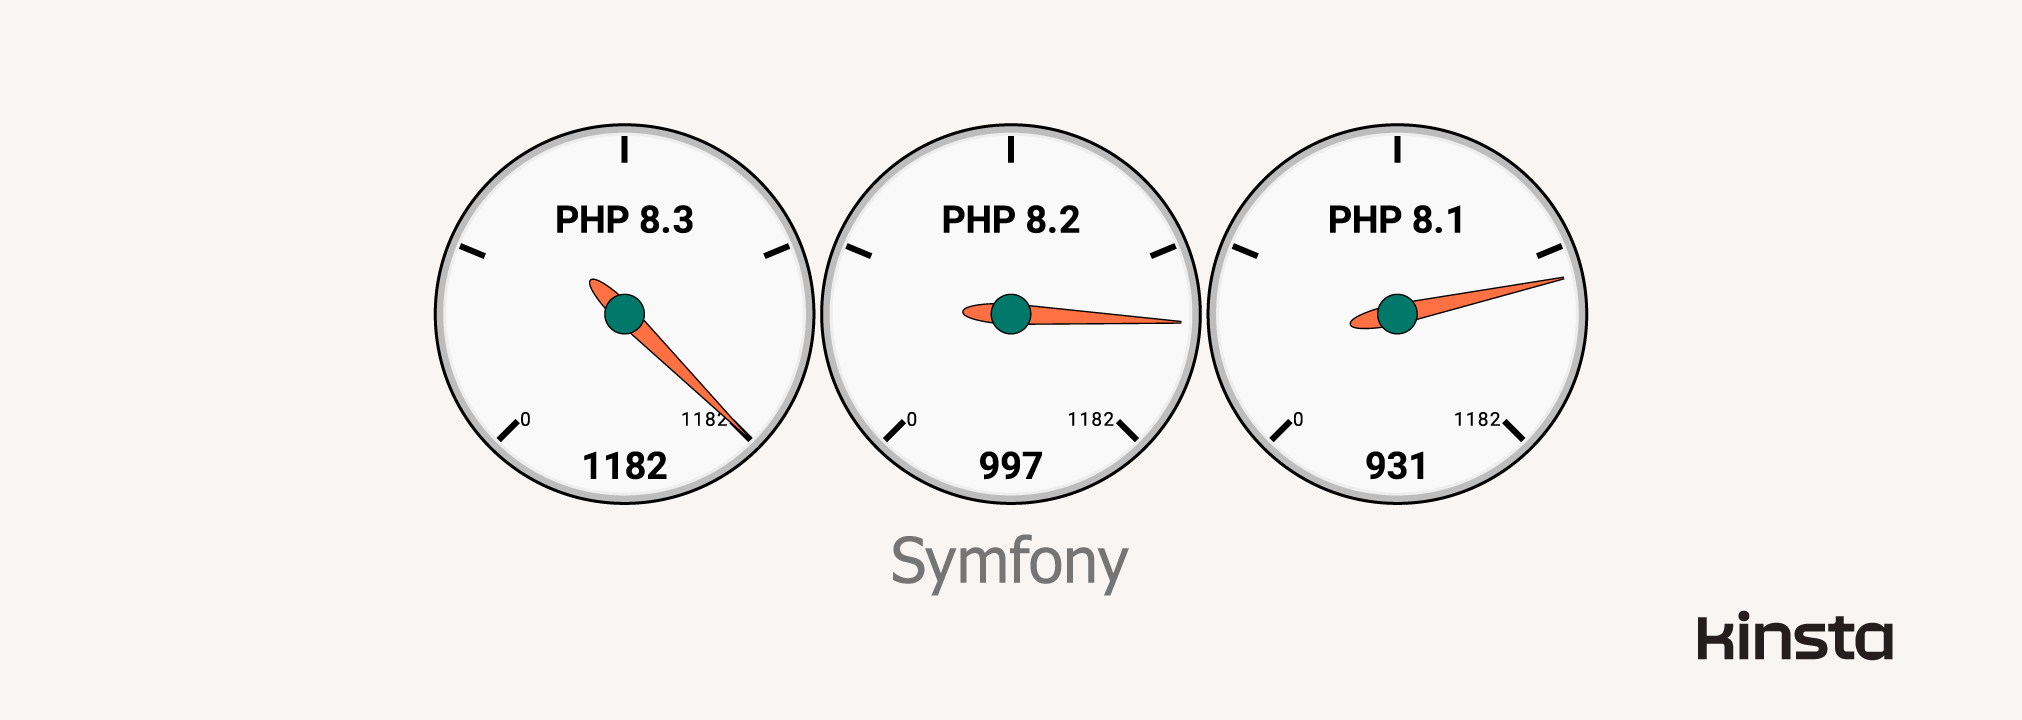 Leistung von Symfony 6.3.0 auf PHP 8.1, 8.2 und 8.3 (in Anfragen/Sekunde)